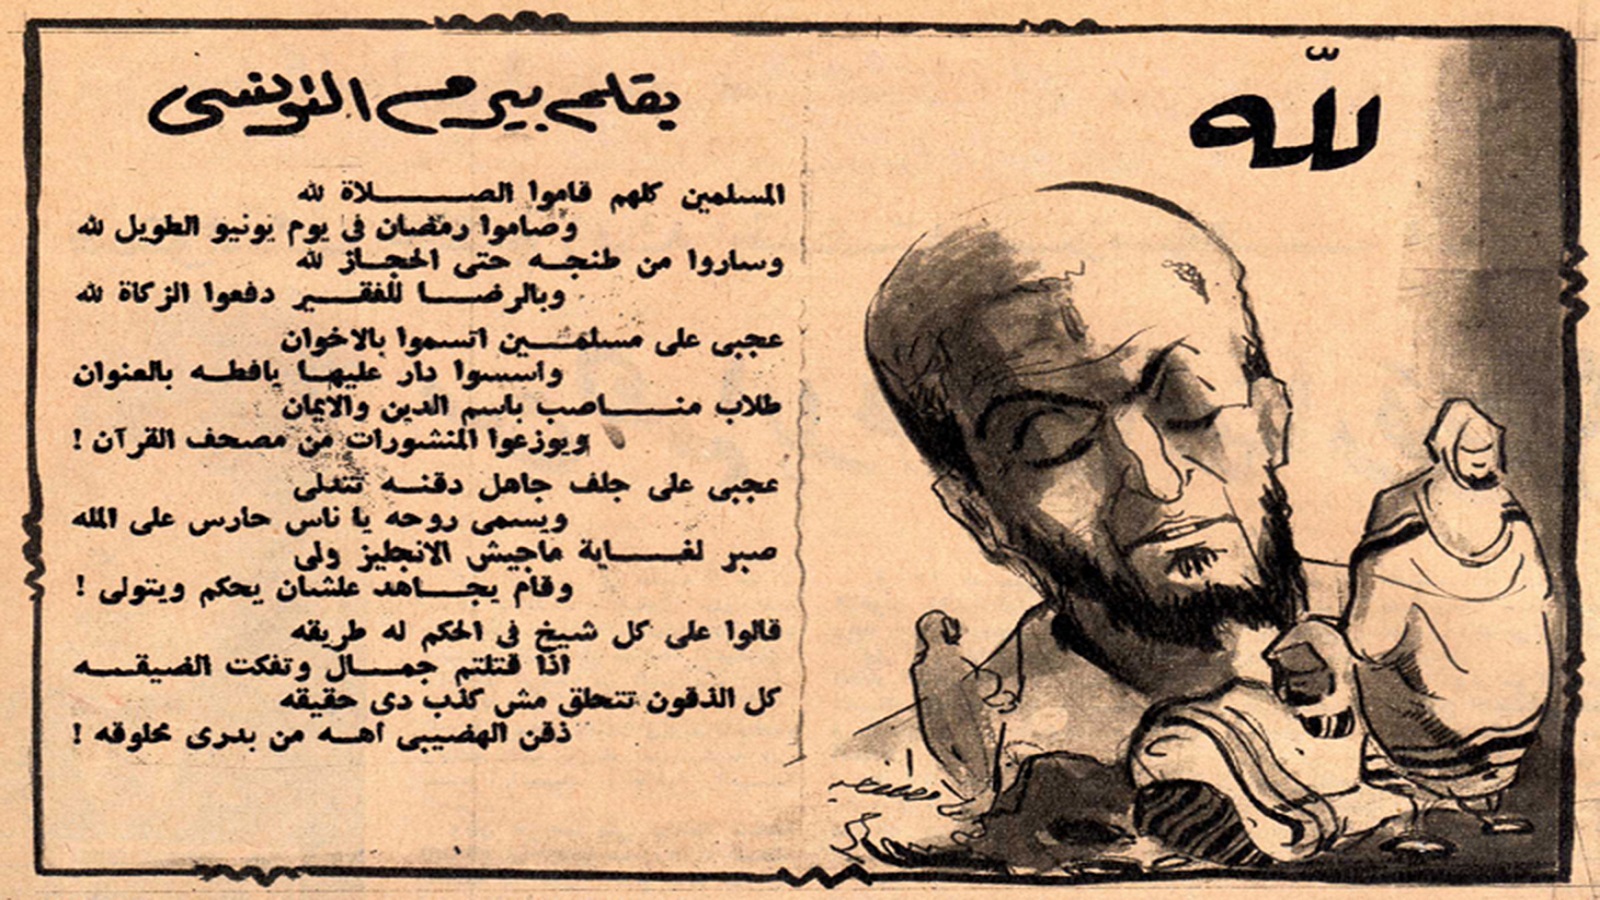  قصيدة بيرم التونسي في الاخوان، 1954.